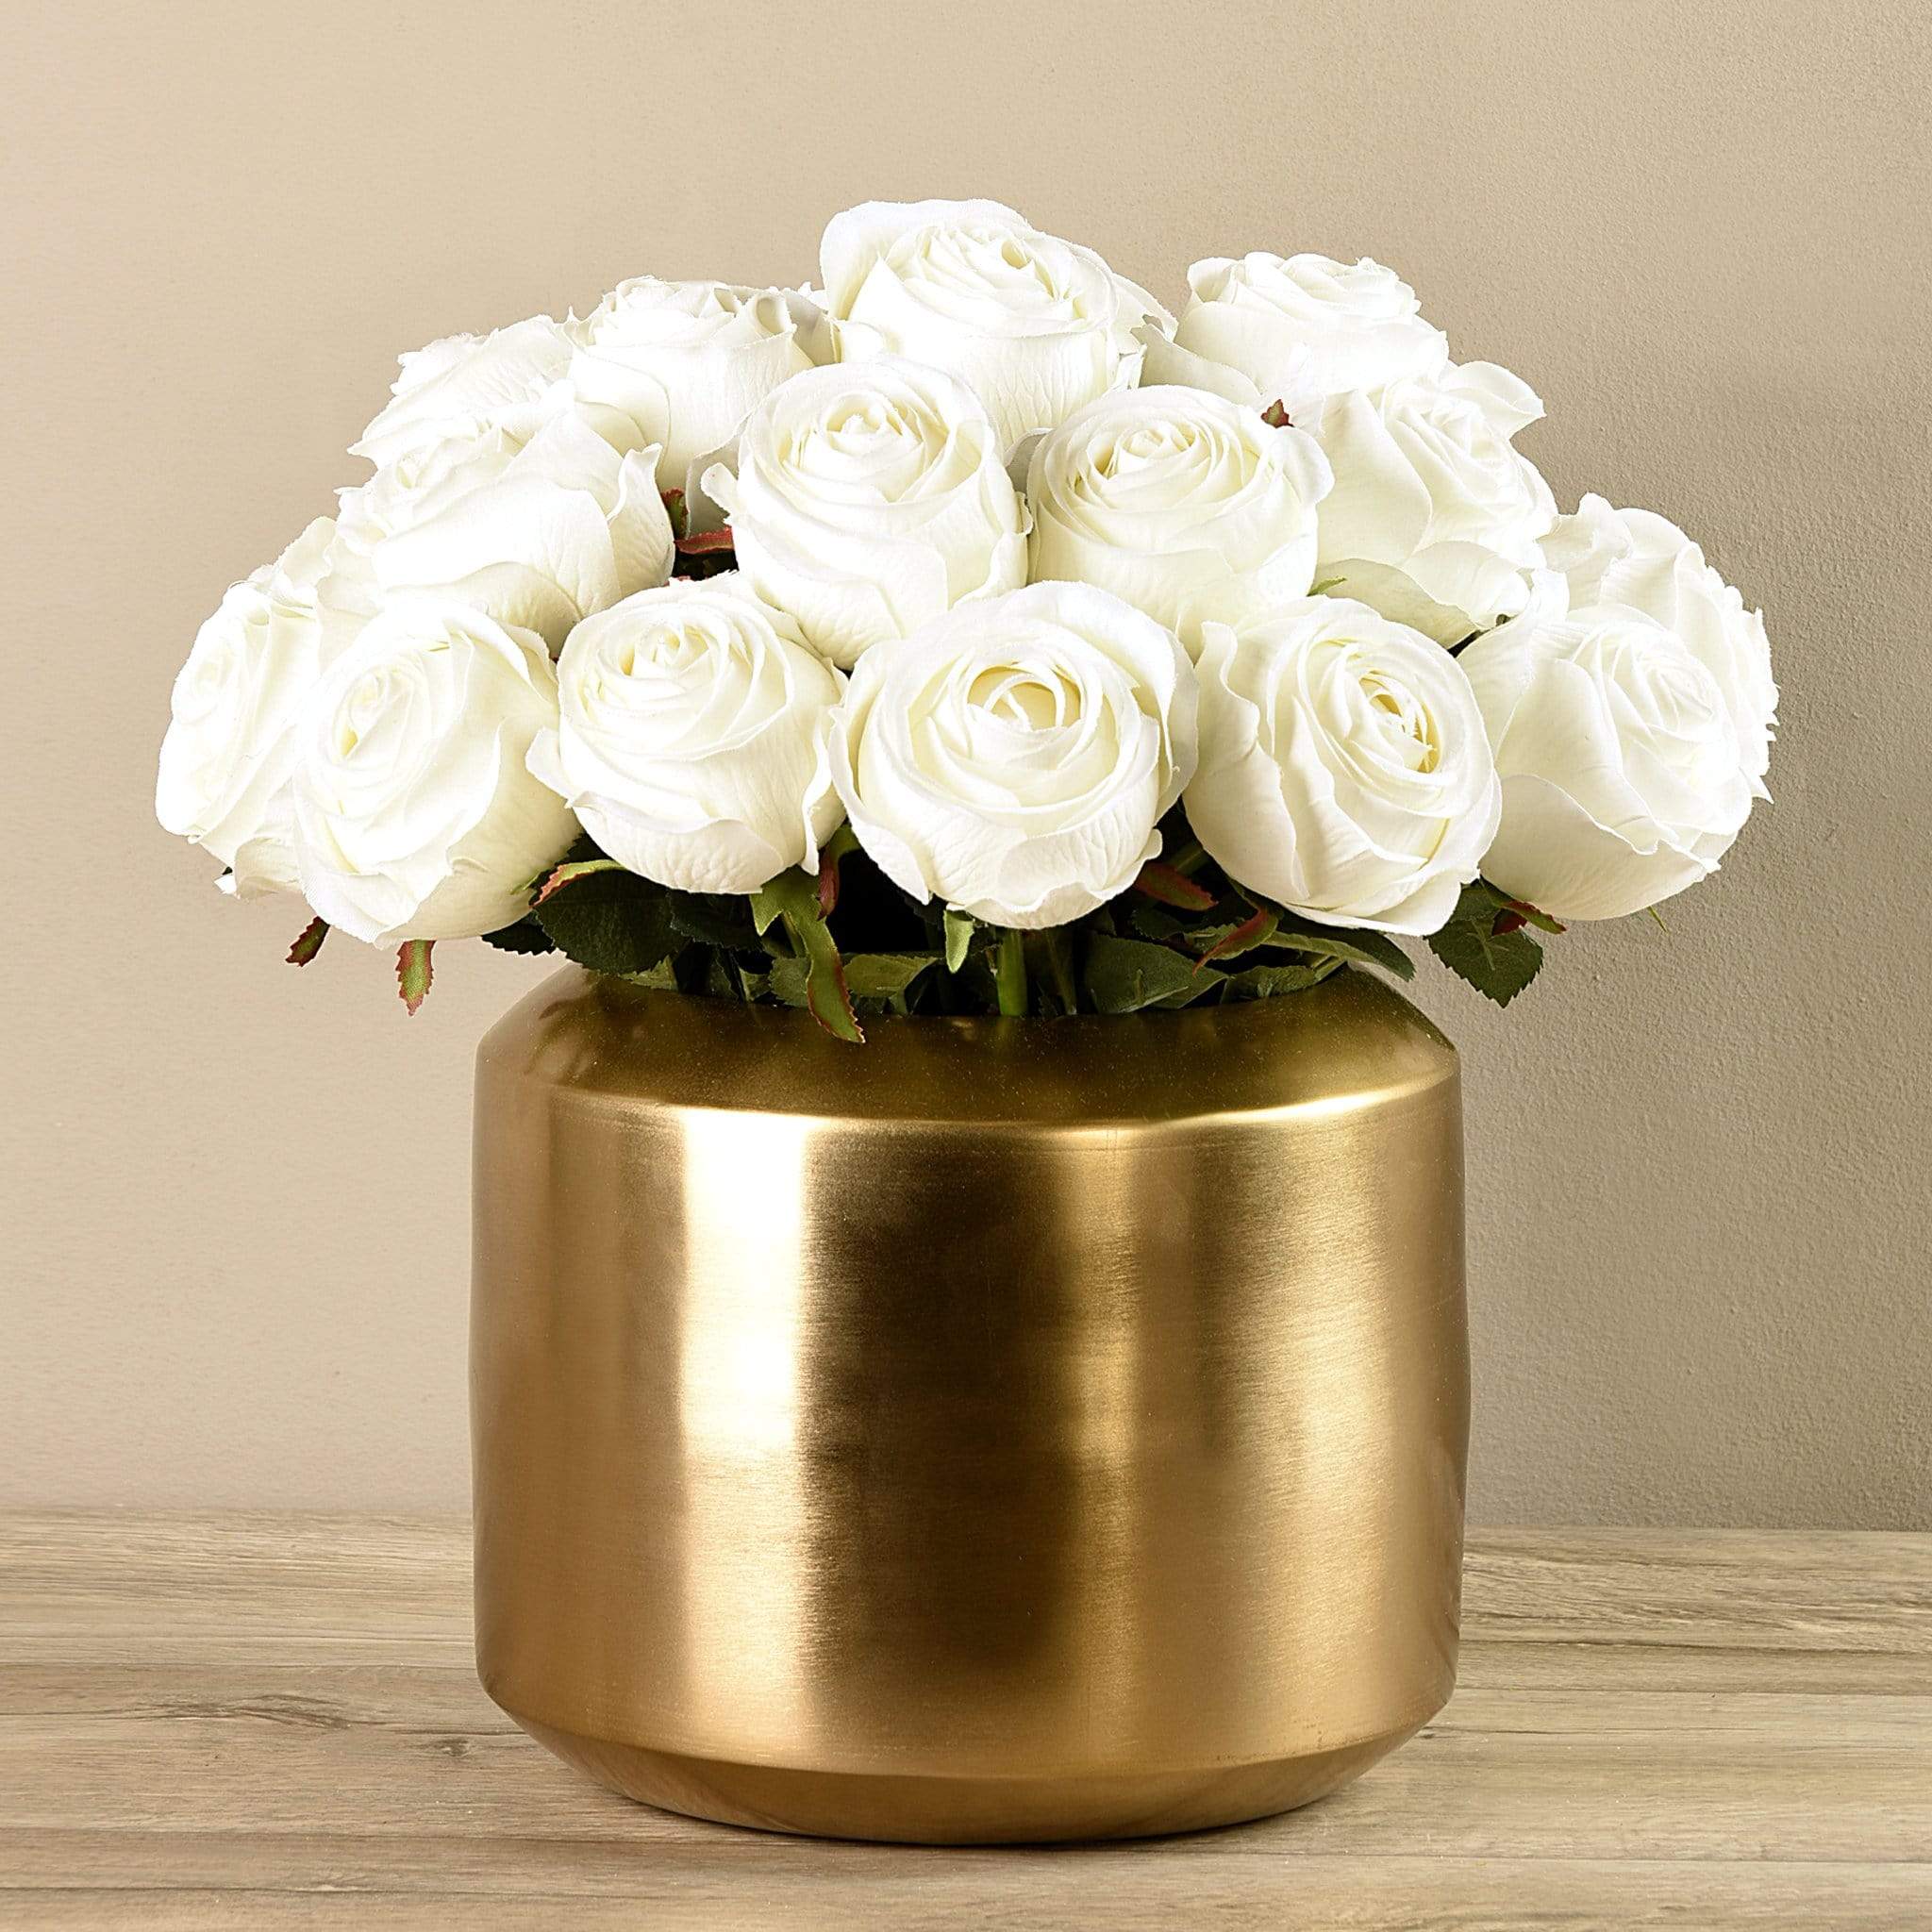 Artificial Rose Arrangement in Gold Vase - Bloomr